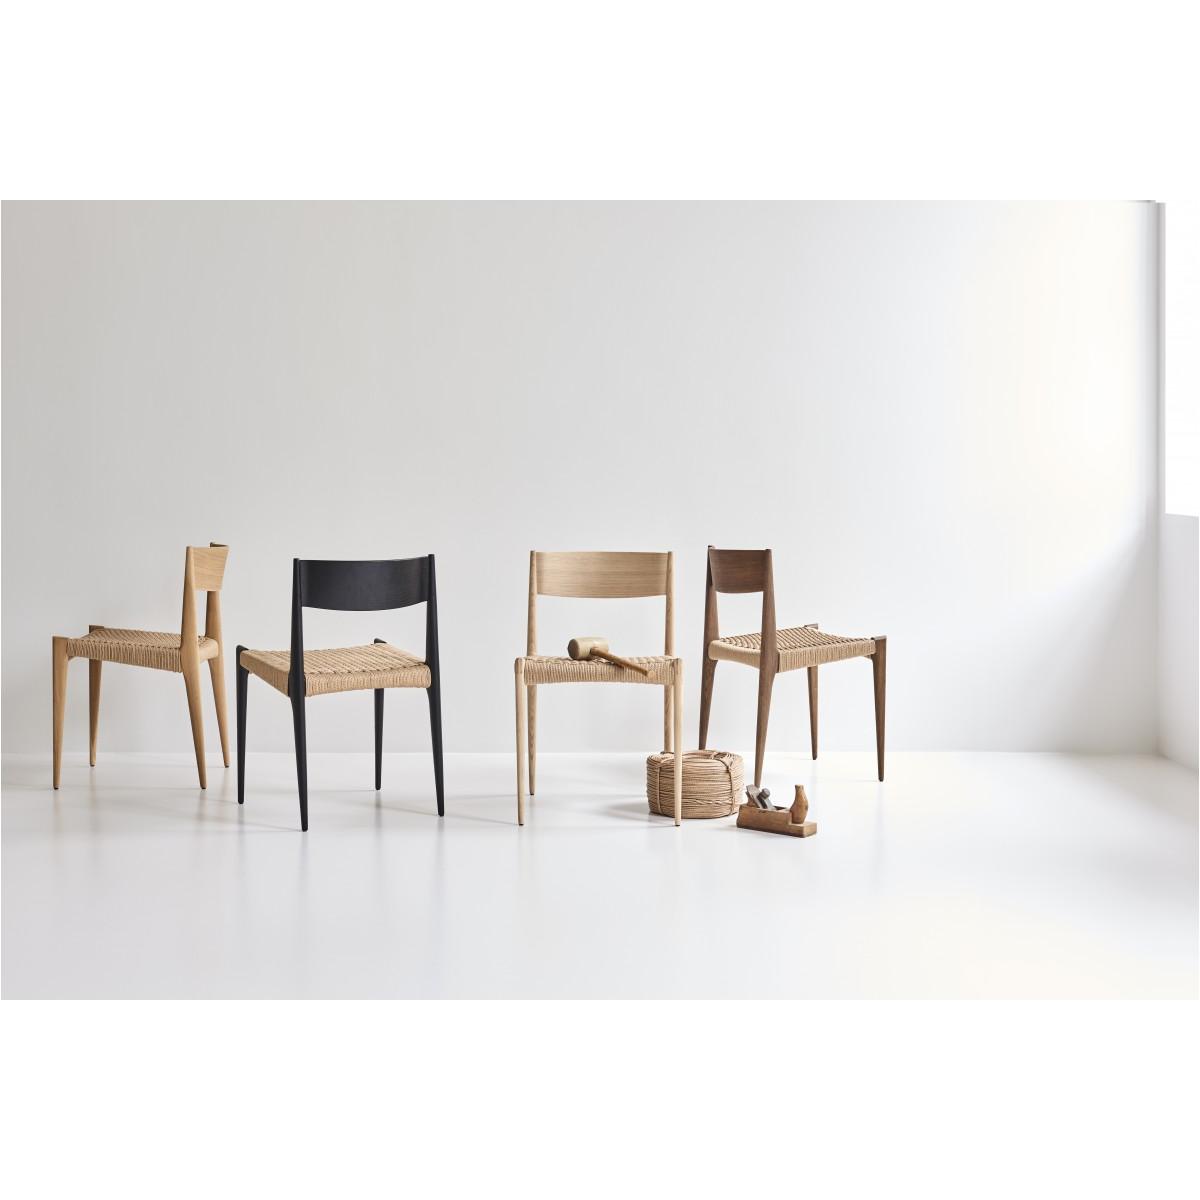 Krzesło jadalne DK3 Pia, wędzony dąb/naturalny papierowy kodel